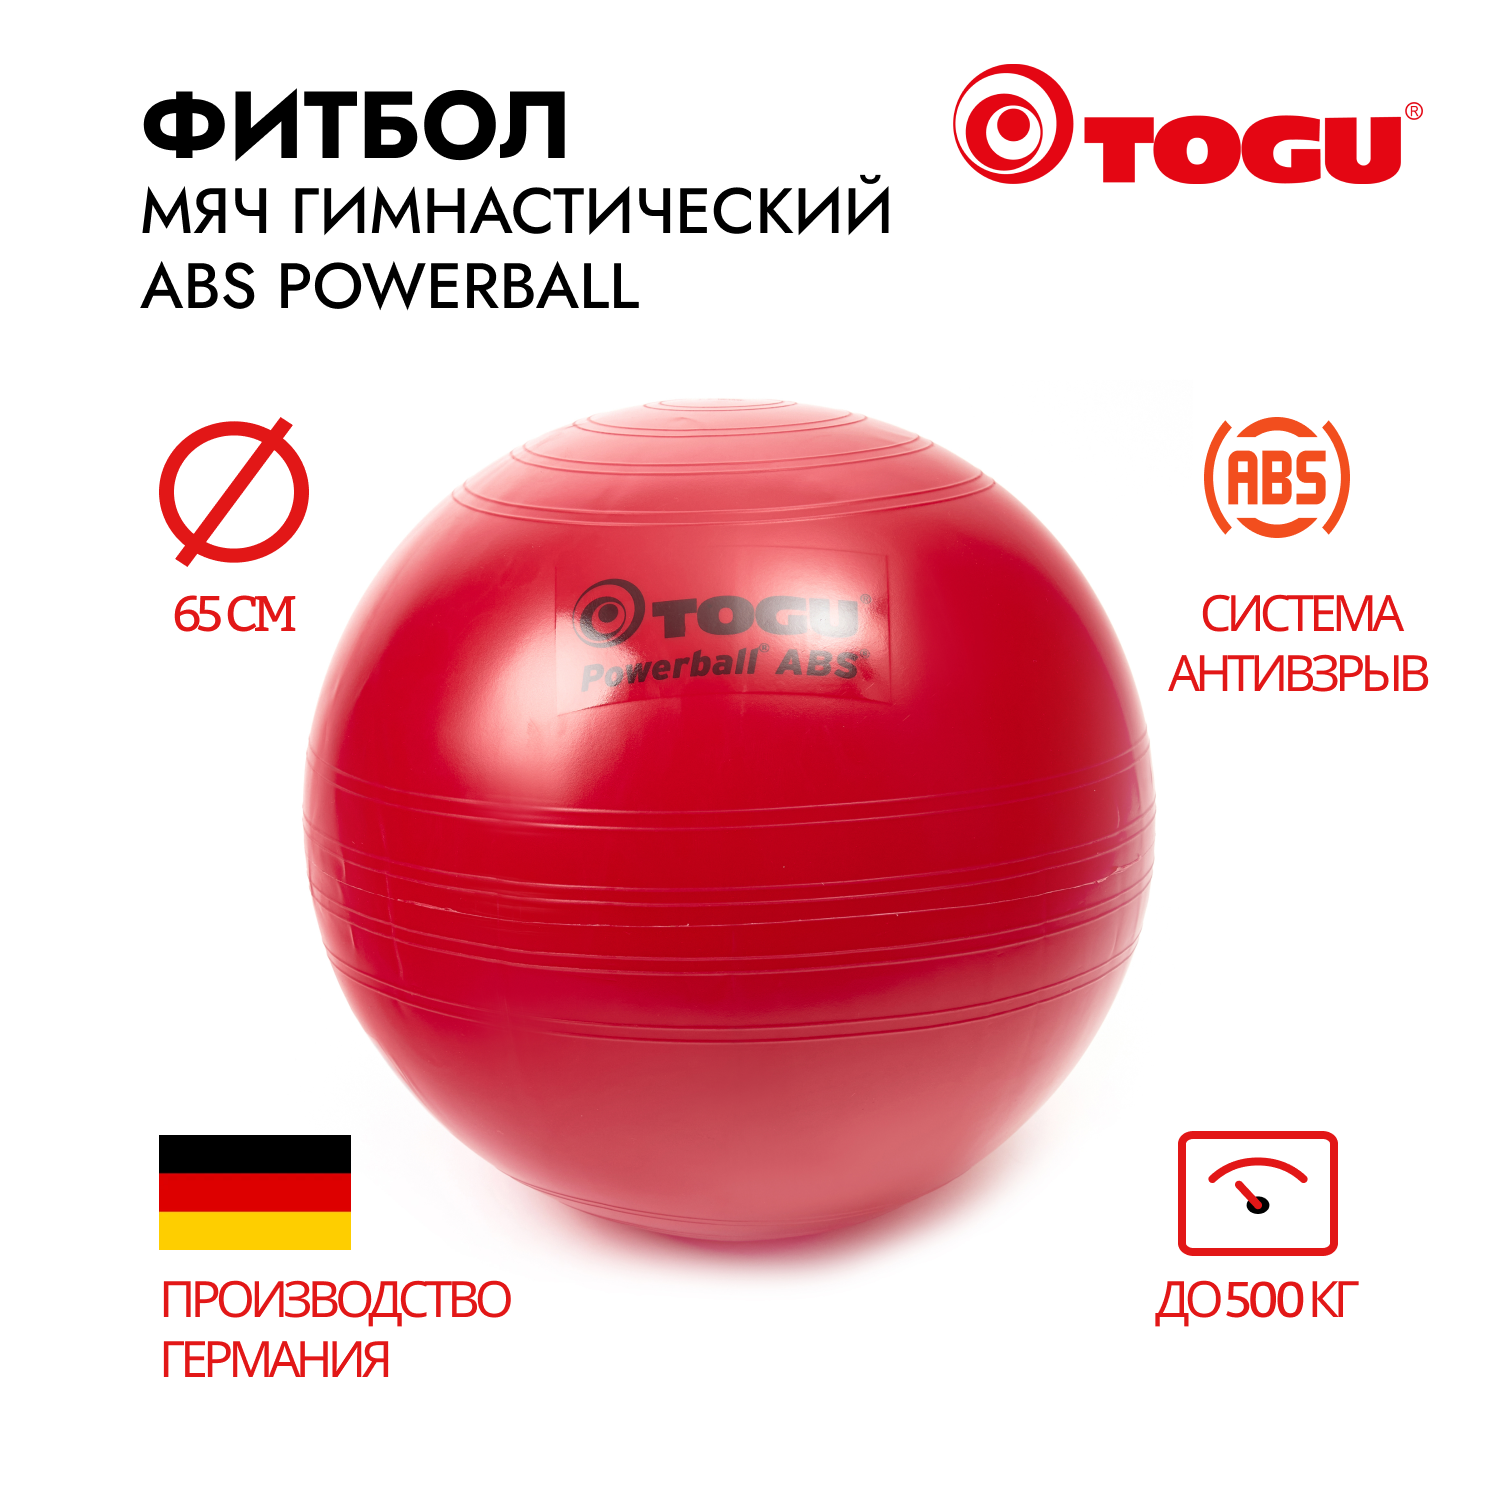 Гимнастический мяч TOGU ABS Powerball 65 см, красный